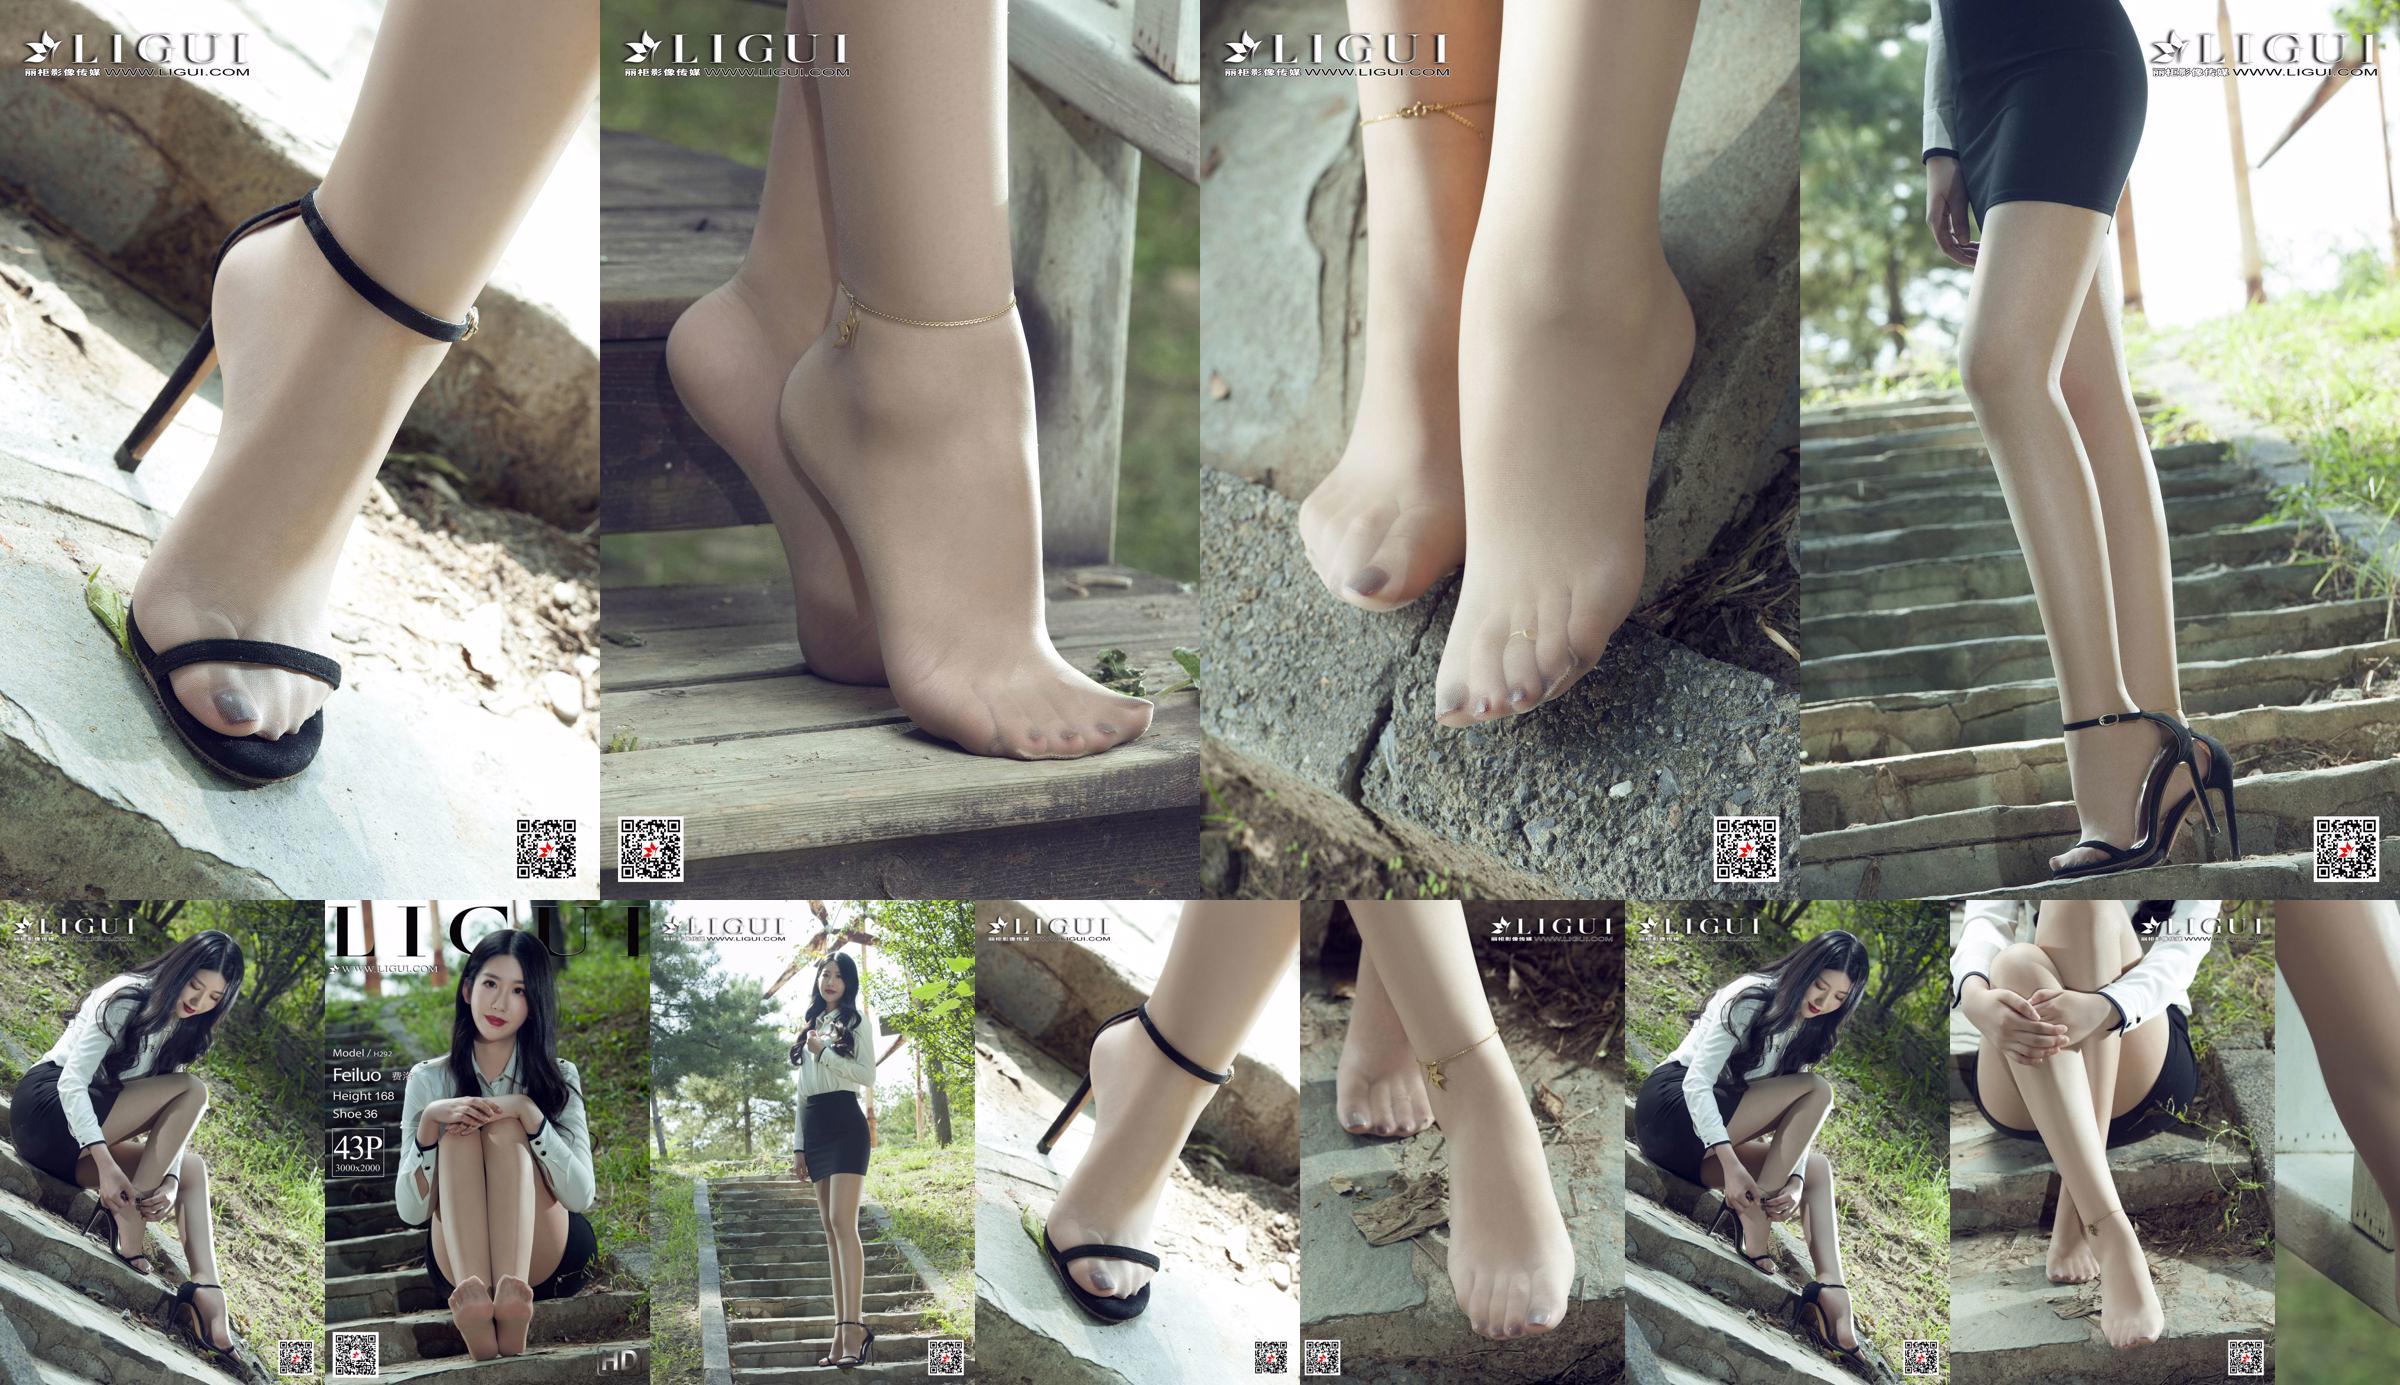 Modelo Fei Luo "Las mejores piernas en medias" [Ligui Ligui] No.3b30d9 Página 1